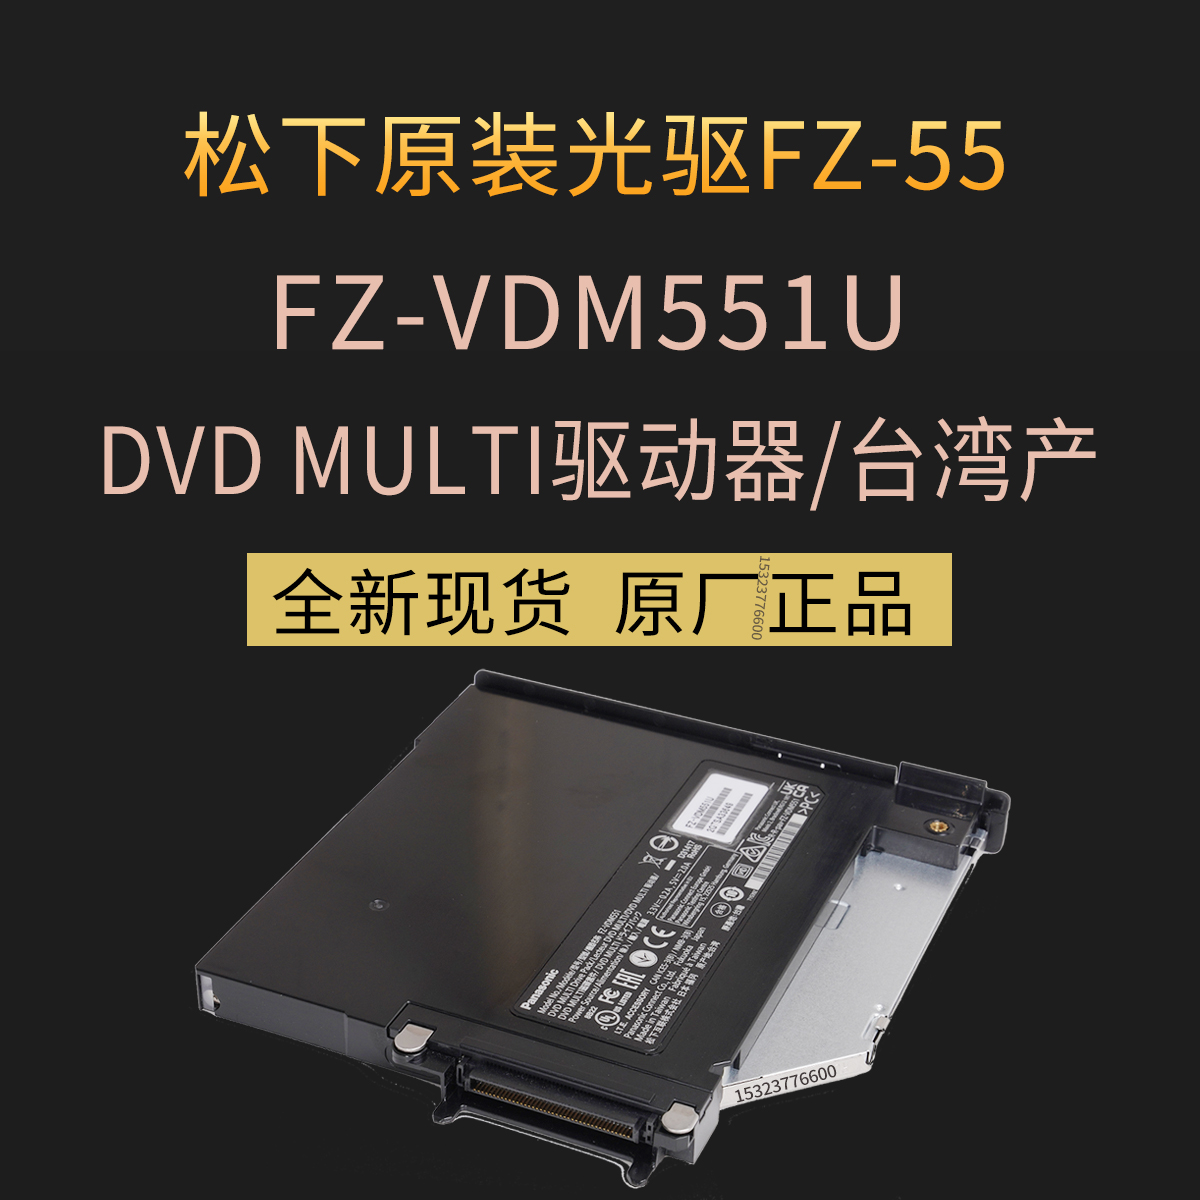 全新原装松下FZ-55D/F坚固型三防笔记本电脑DVD/CD光驱FZ-VDM551U